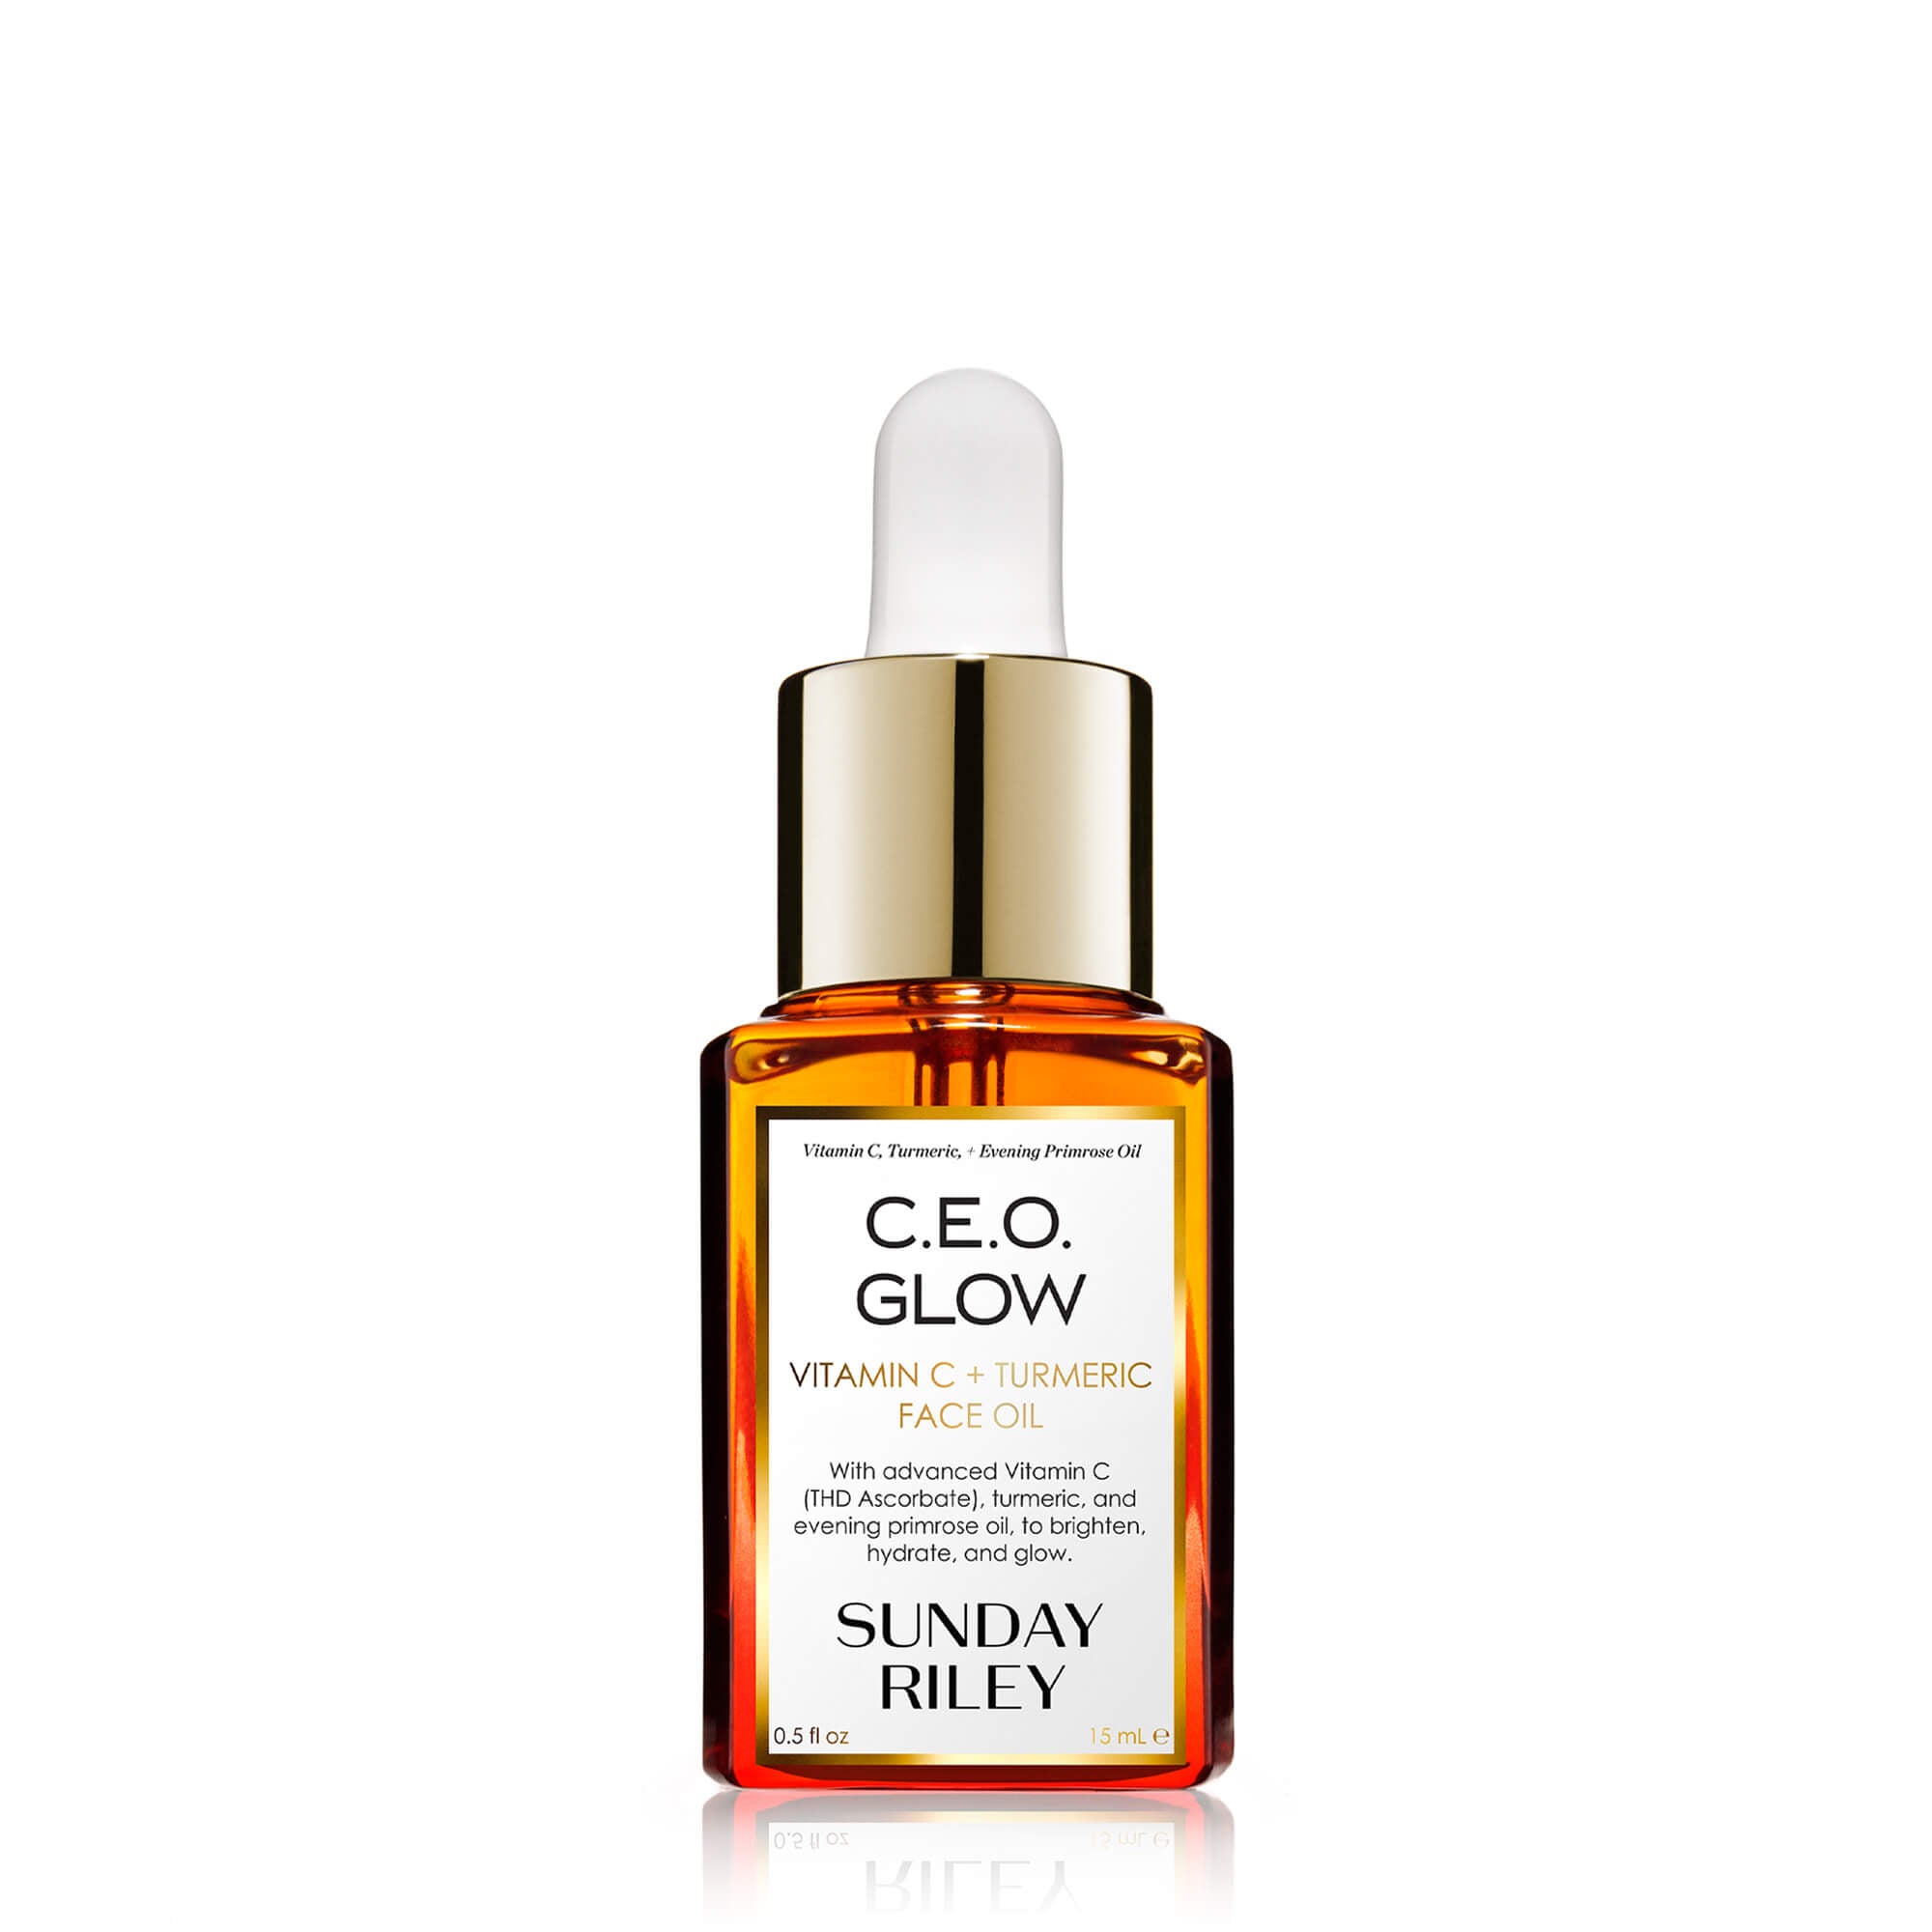 C.E.O. Glow Vitamin C and Turmeric Face Oil